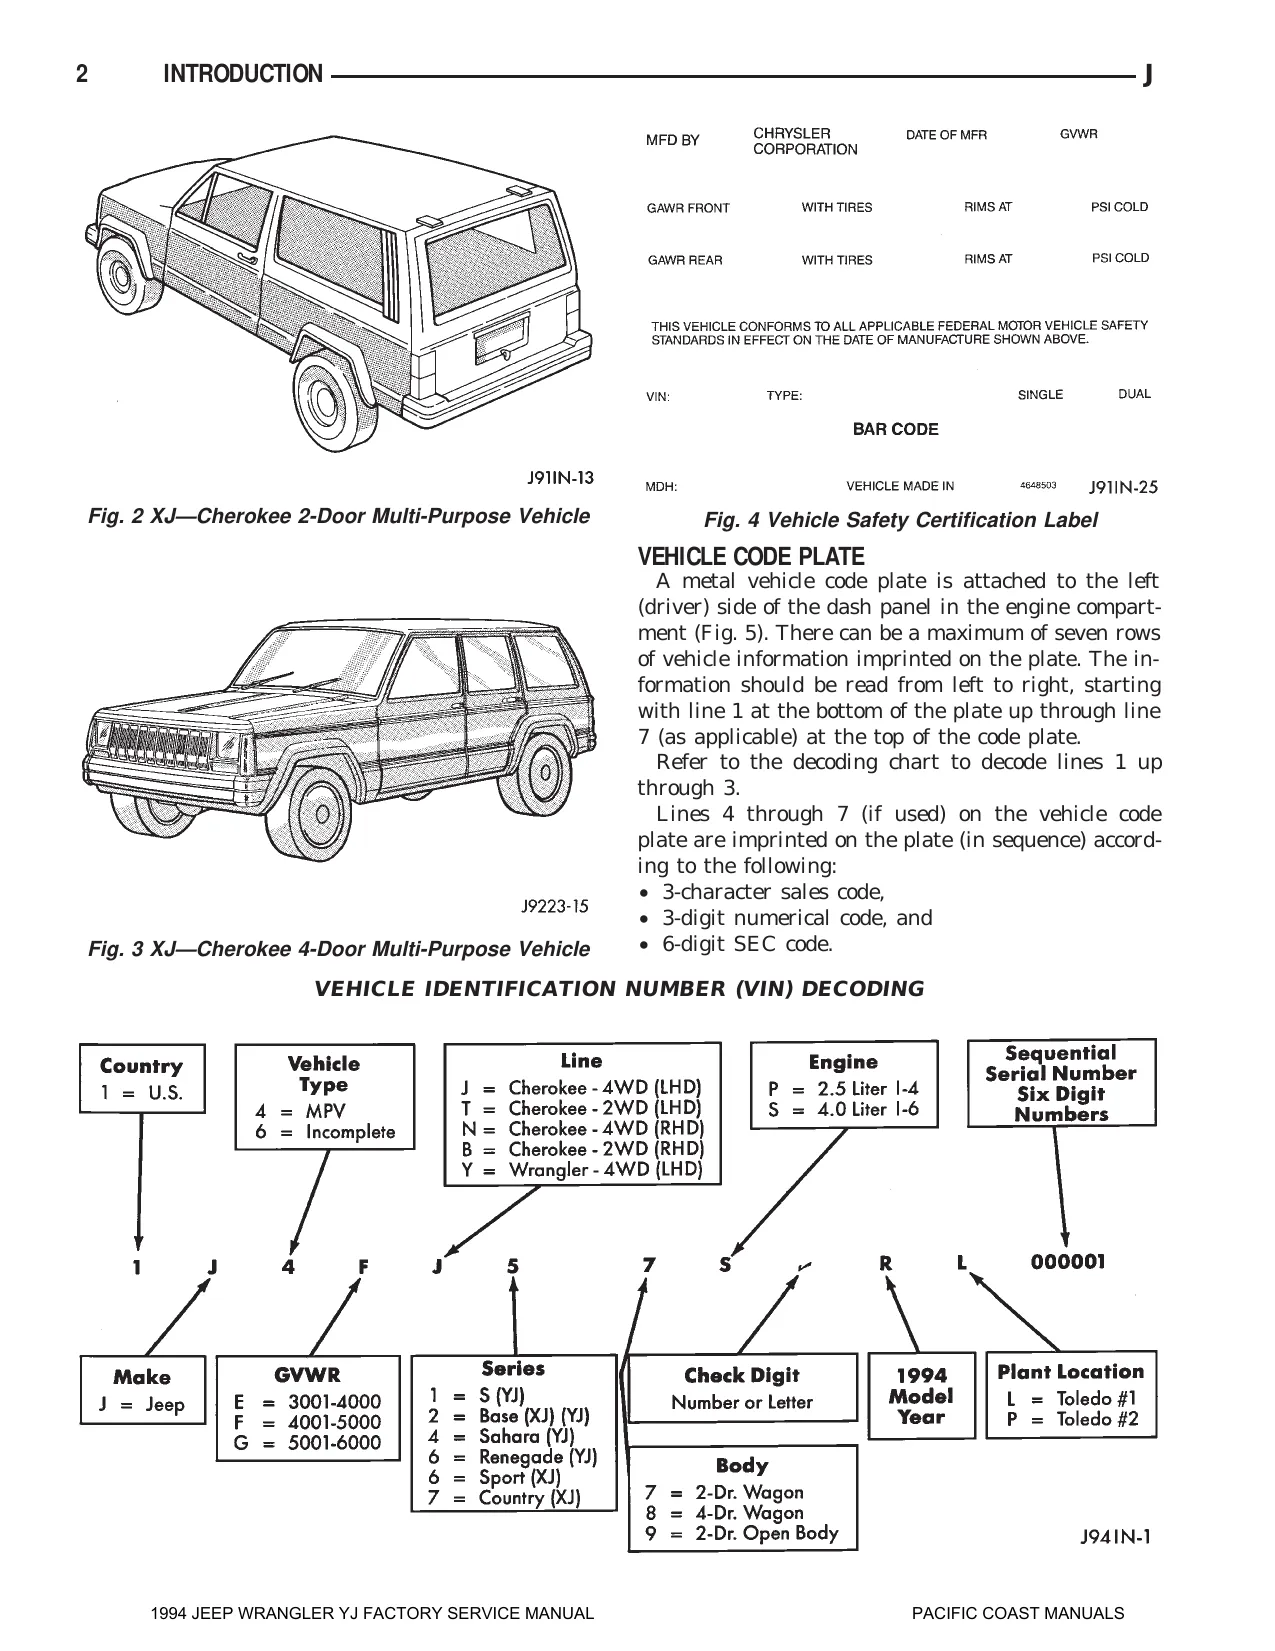 1994 Jeep Wrangler YJ repair manual Preview image 5